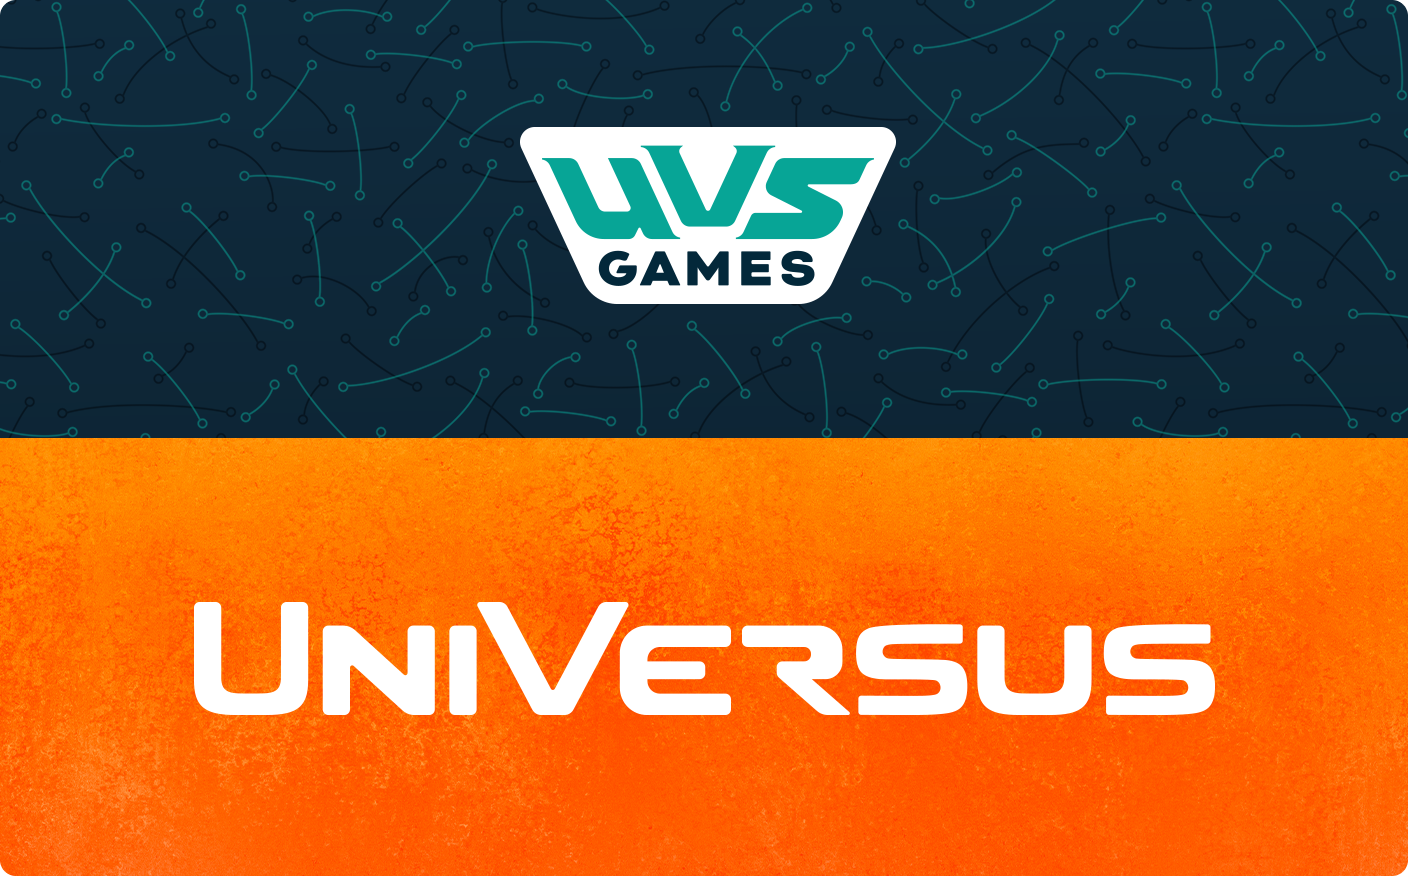 UVS Games and UniVersus new rebrand logos